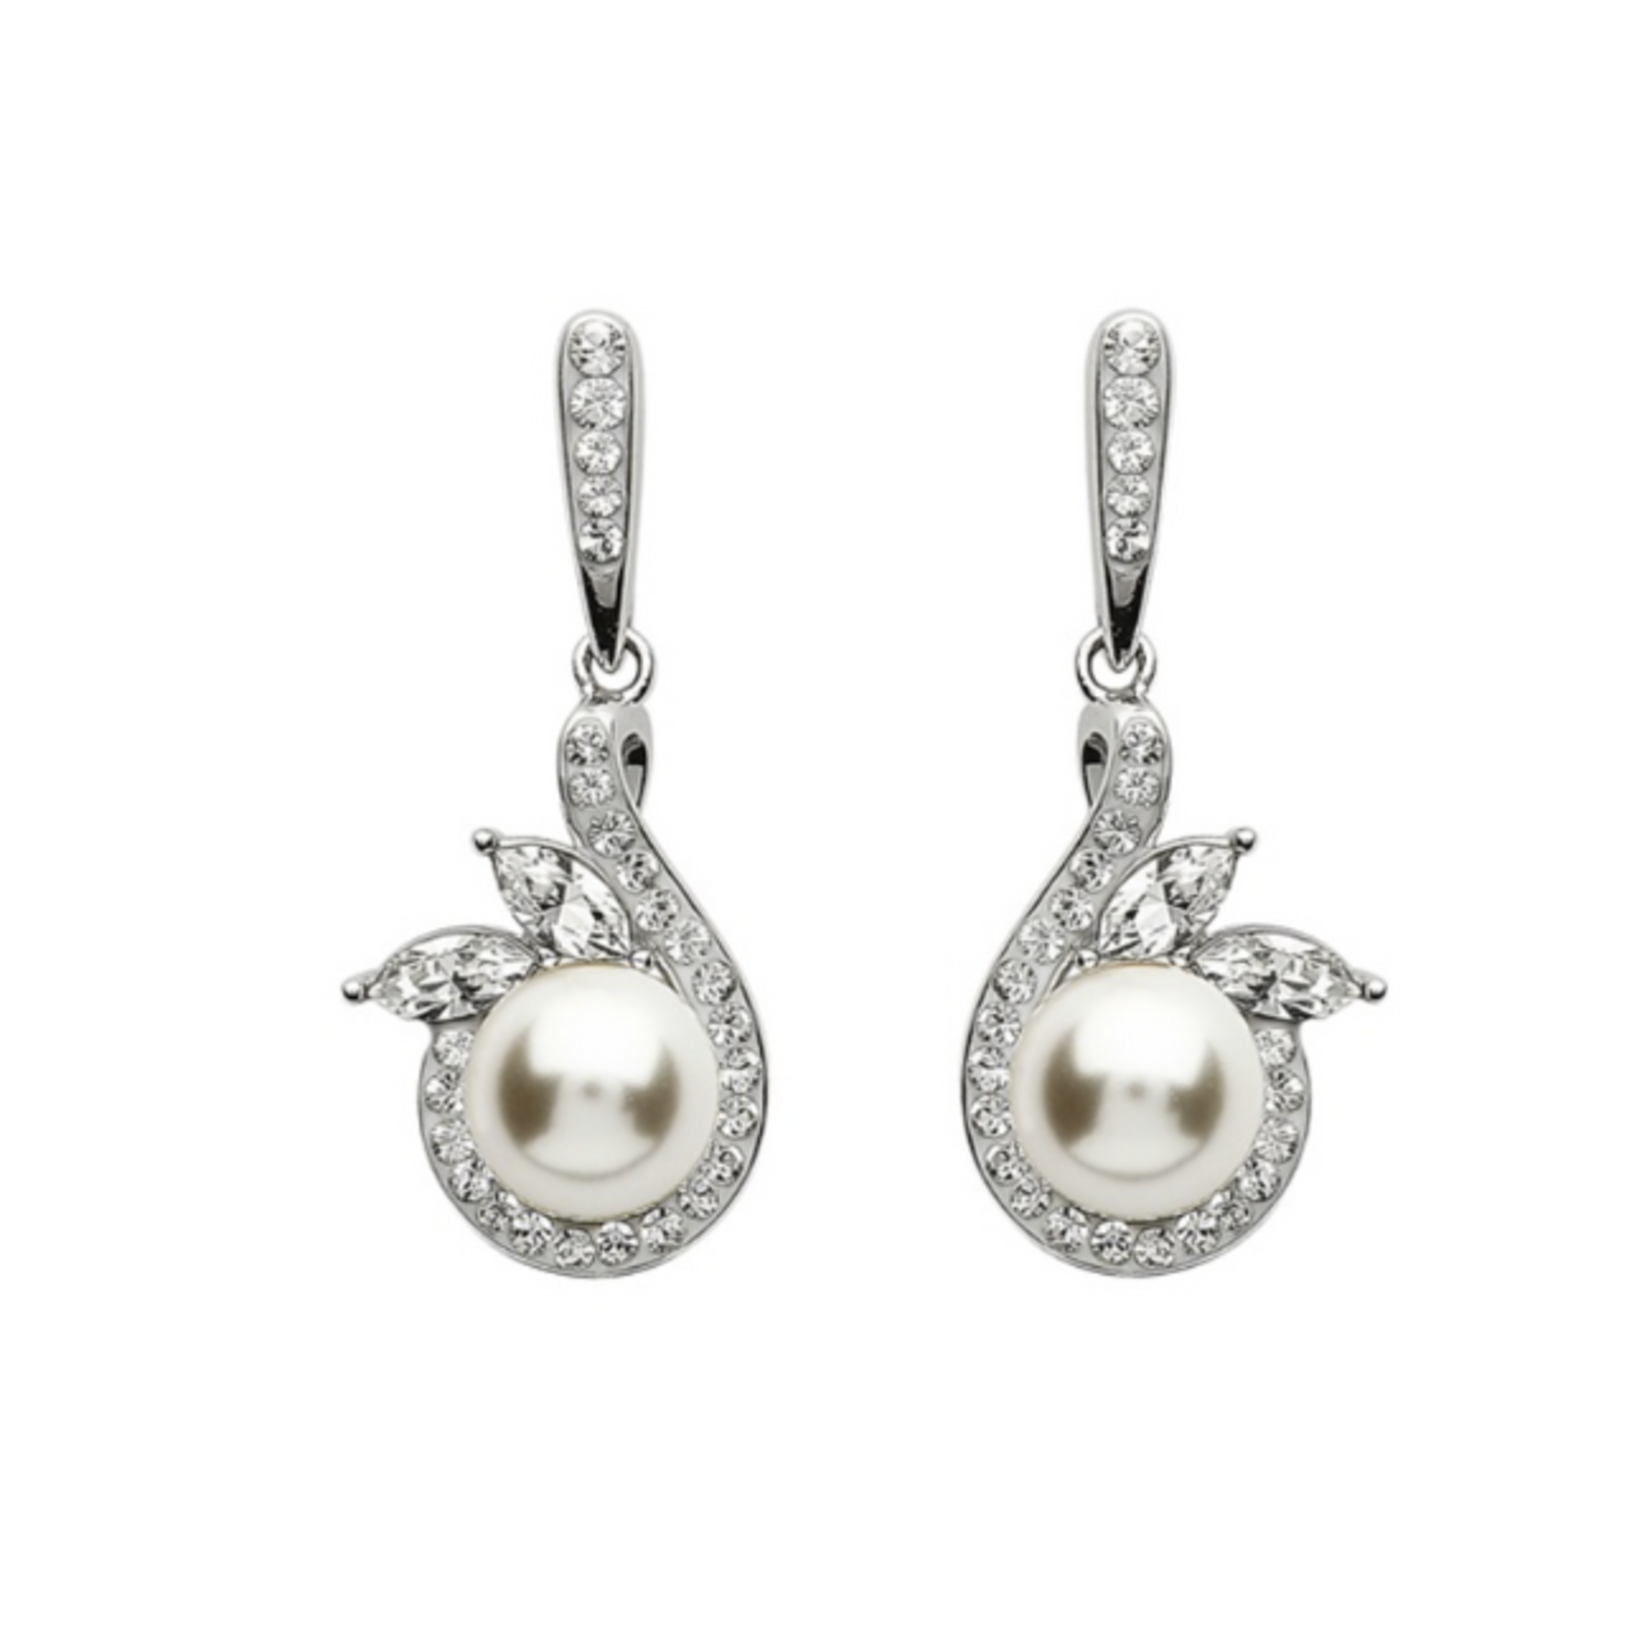 Shanore S/S Swarovski/Pearl Swan Drop Earrings